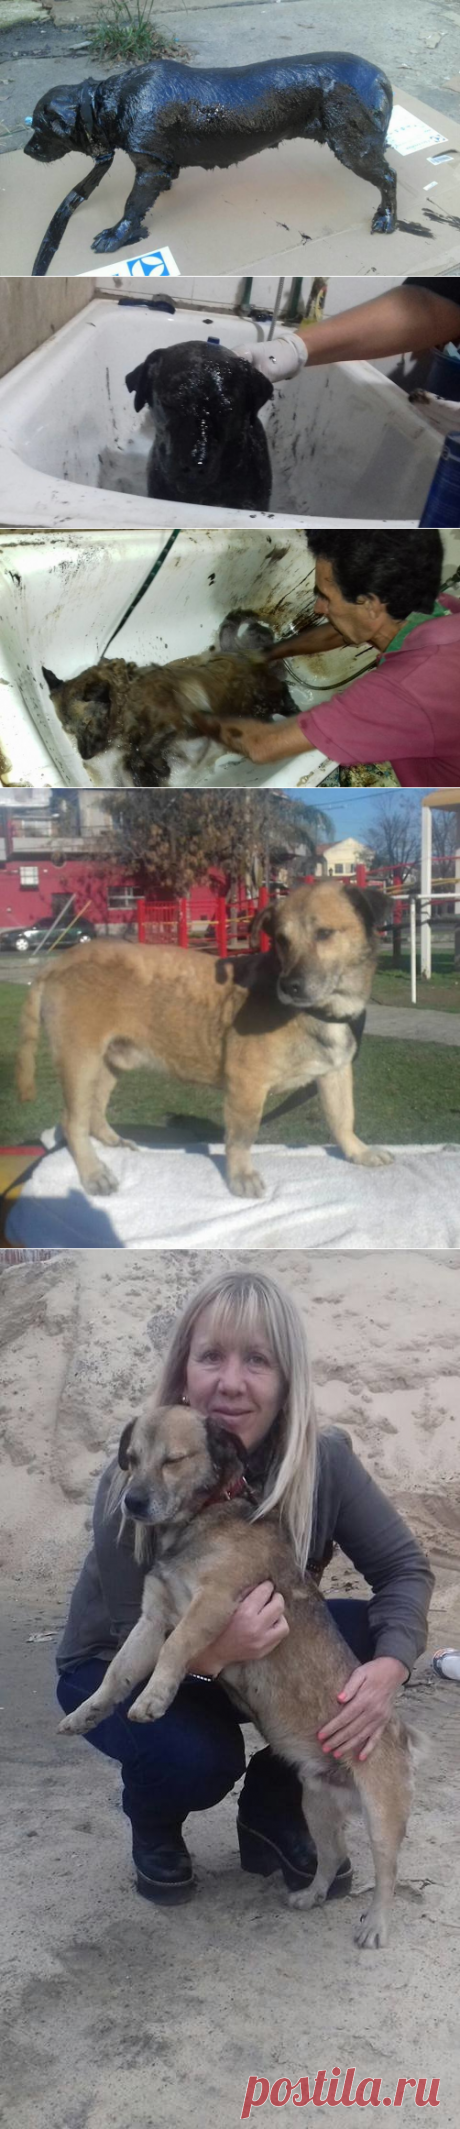 Бездомная собака, полностью покрытая смолой, бродила по улицам Аргентины. Что стало с умирающим животным